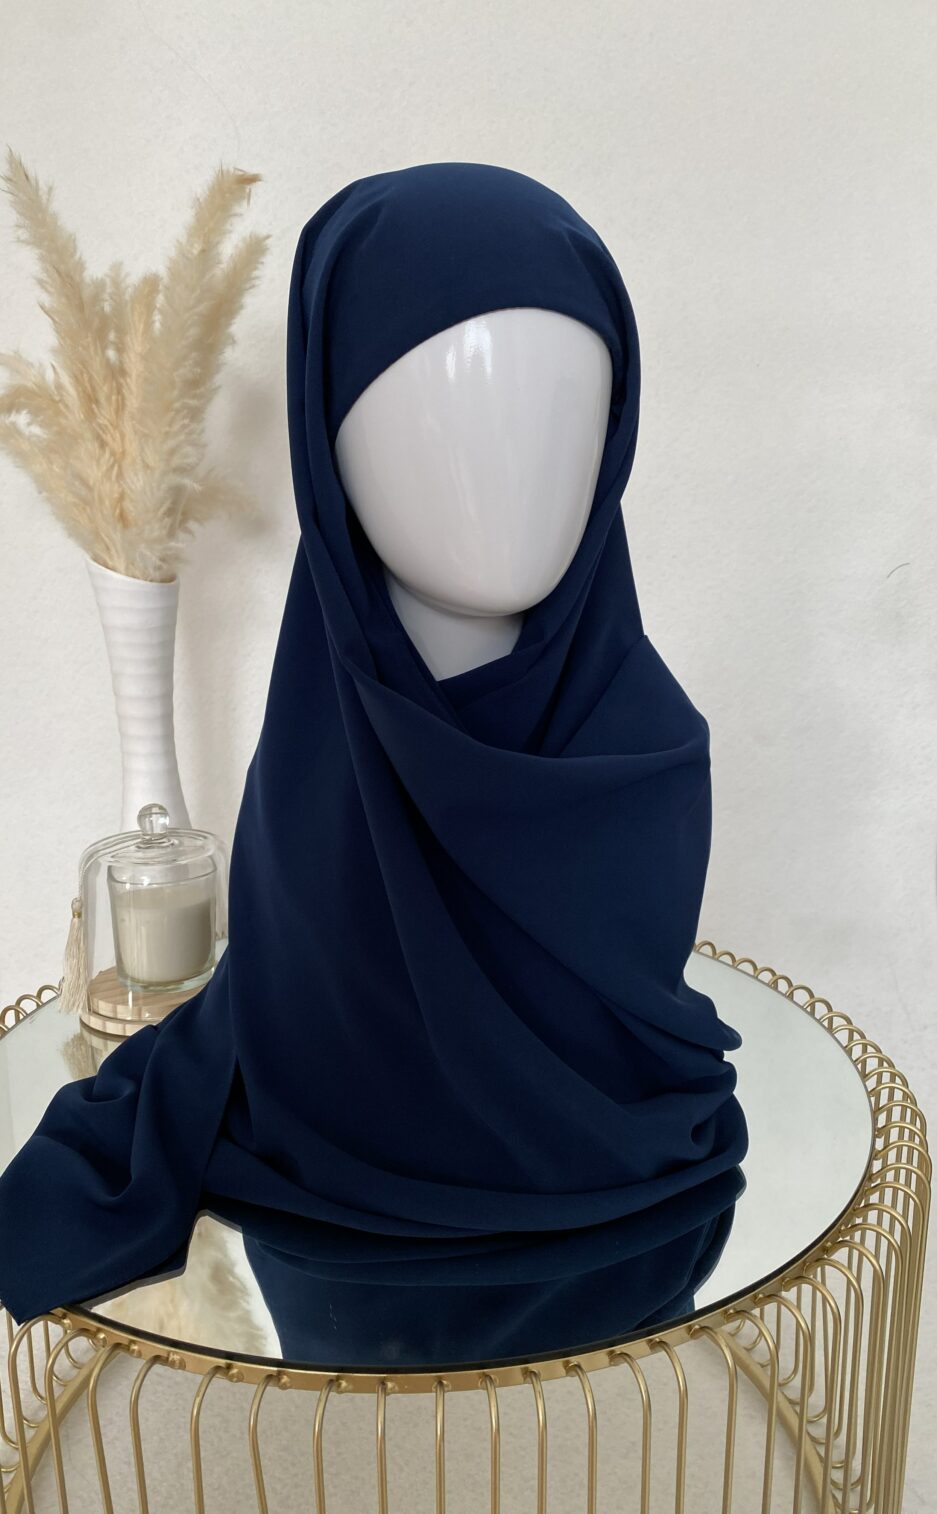 Vente en ligne hijab bleu marine à enfiler avec bonnet, en gros et au détail voile soie de médine de bonne qualité 100% opaque, long, livraison rapide en 24H Nouveau hijab en soie de médine à enfilé avec bonnet intégrer, Cendrijab est situé dans le nord de la France